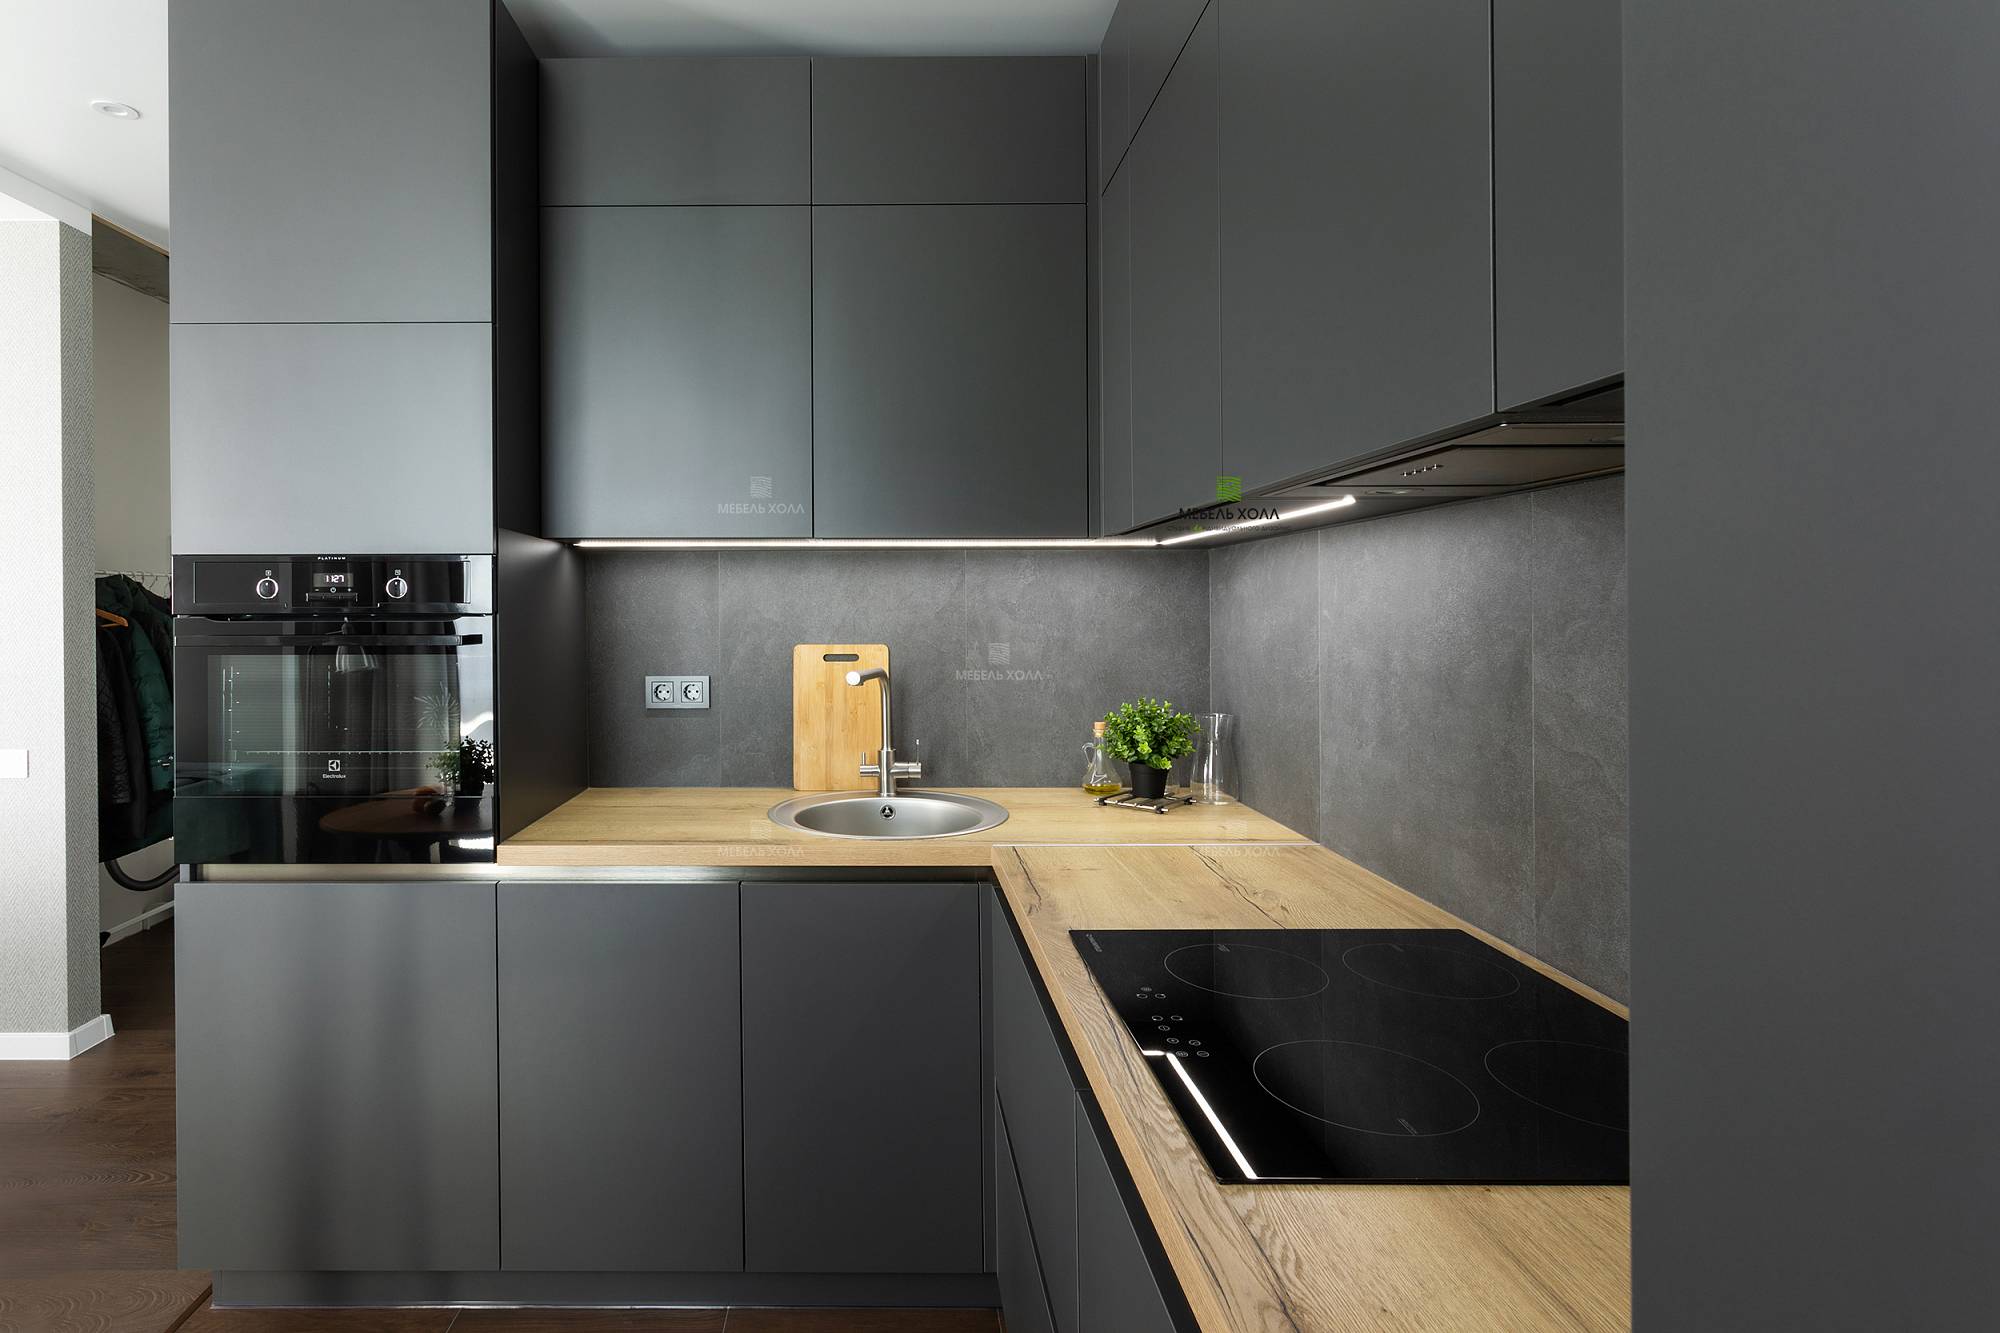 Дизайн кухни с балконом: 75 фото интерьеров, как объединить, красивые идеи